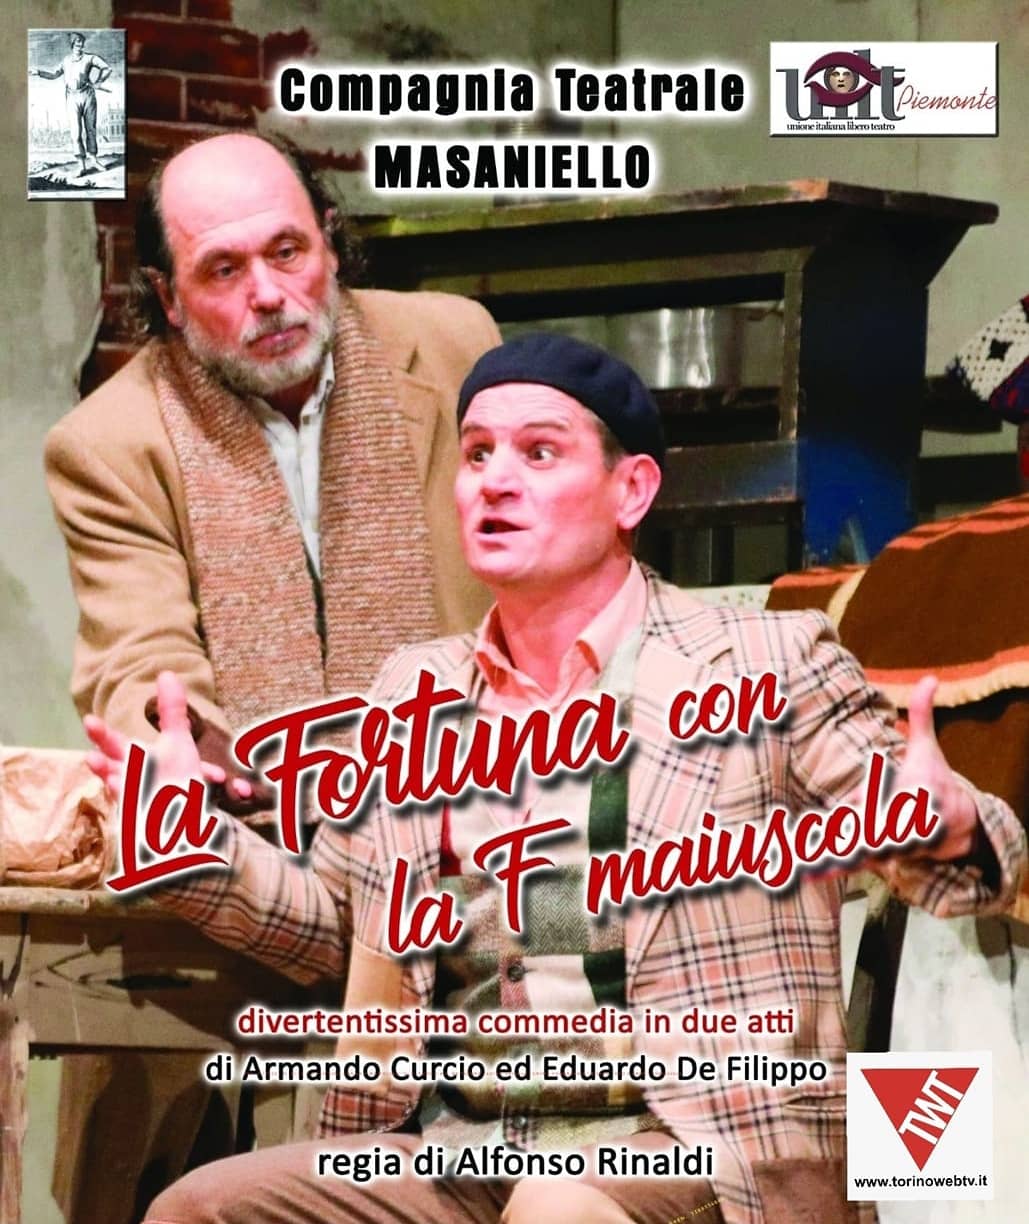 Compagnia Teatrale "Masaniello" - Torino